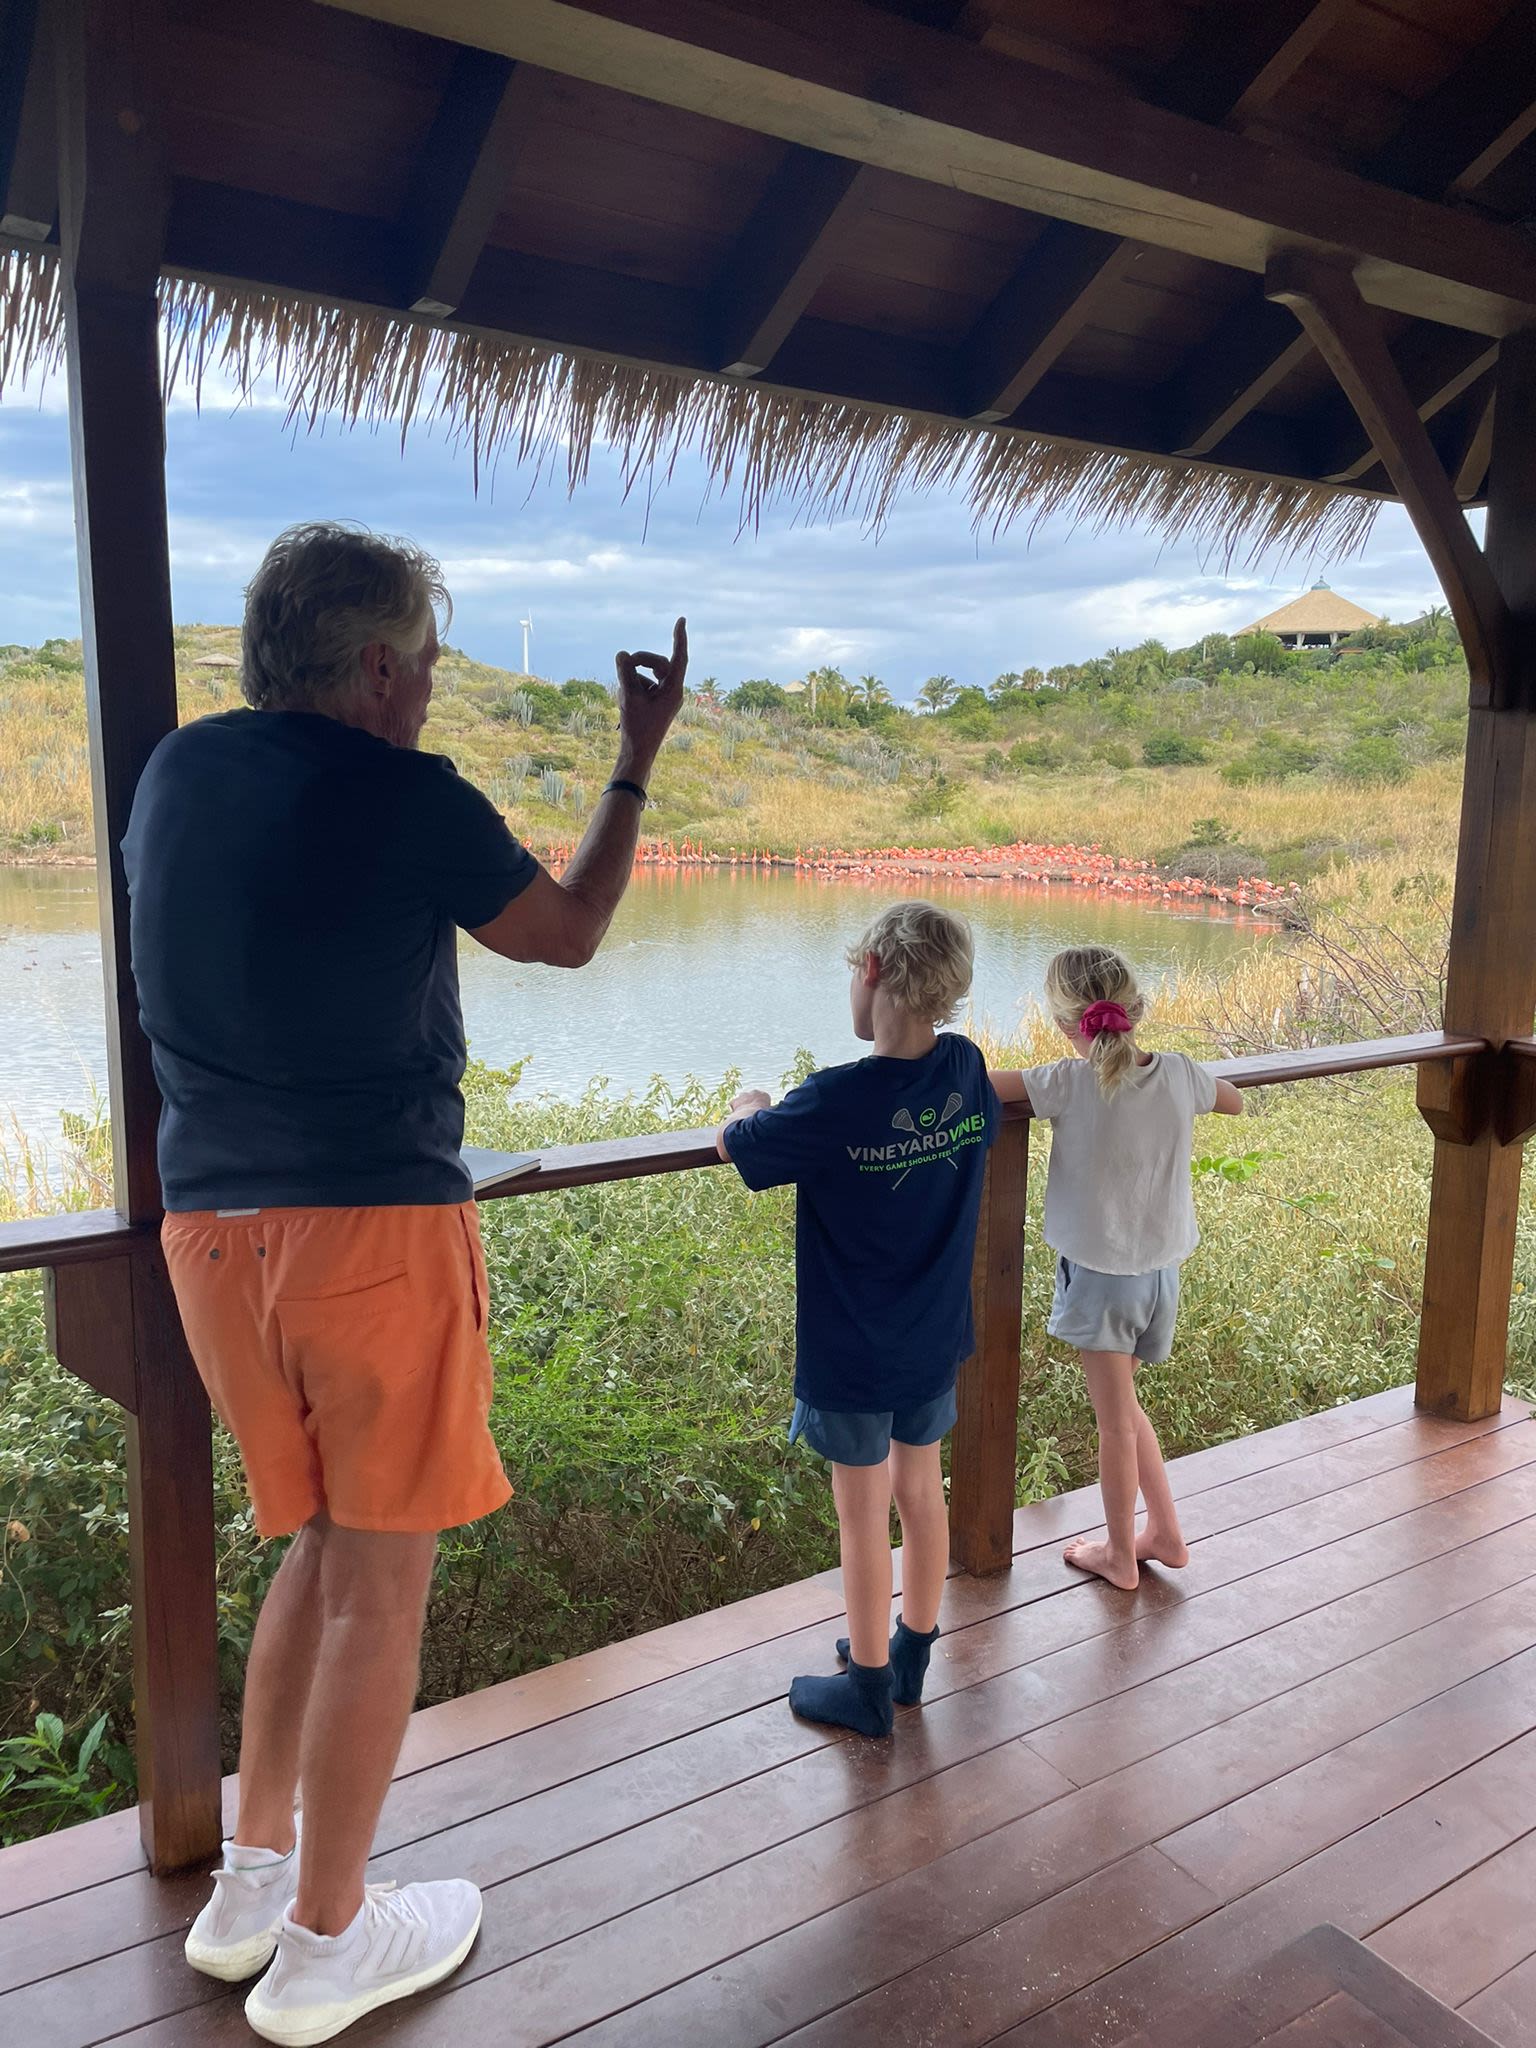 Richard Branson with his grandchildren, Artie and Etta, on Necker Island